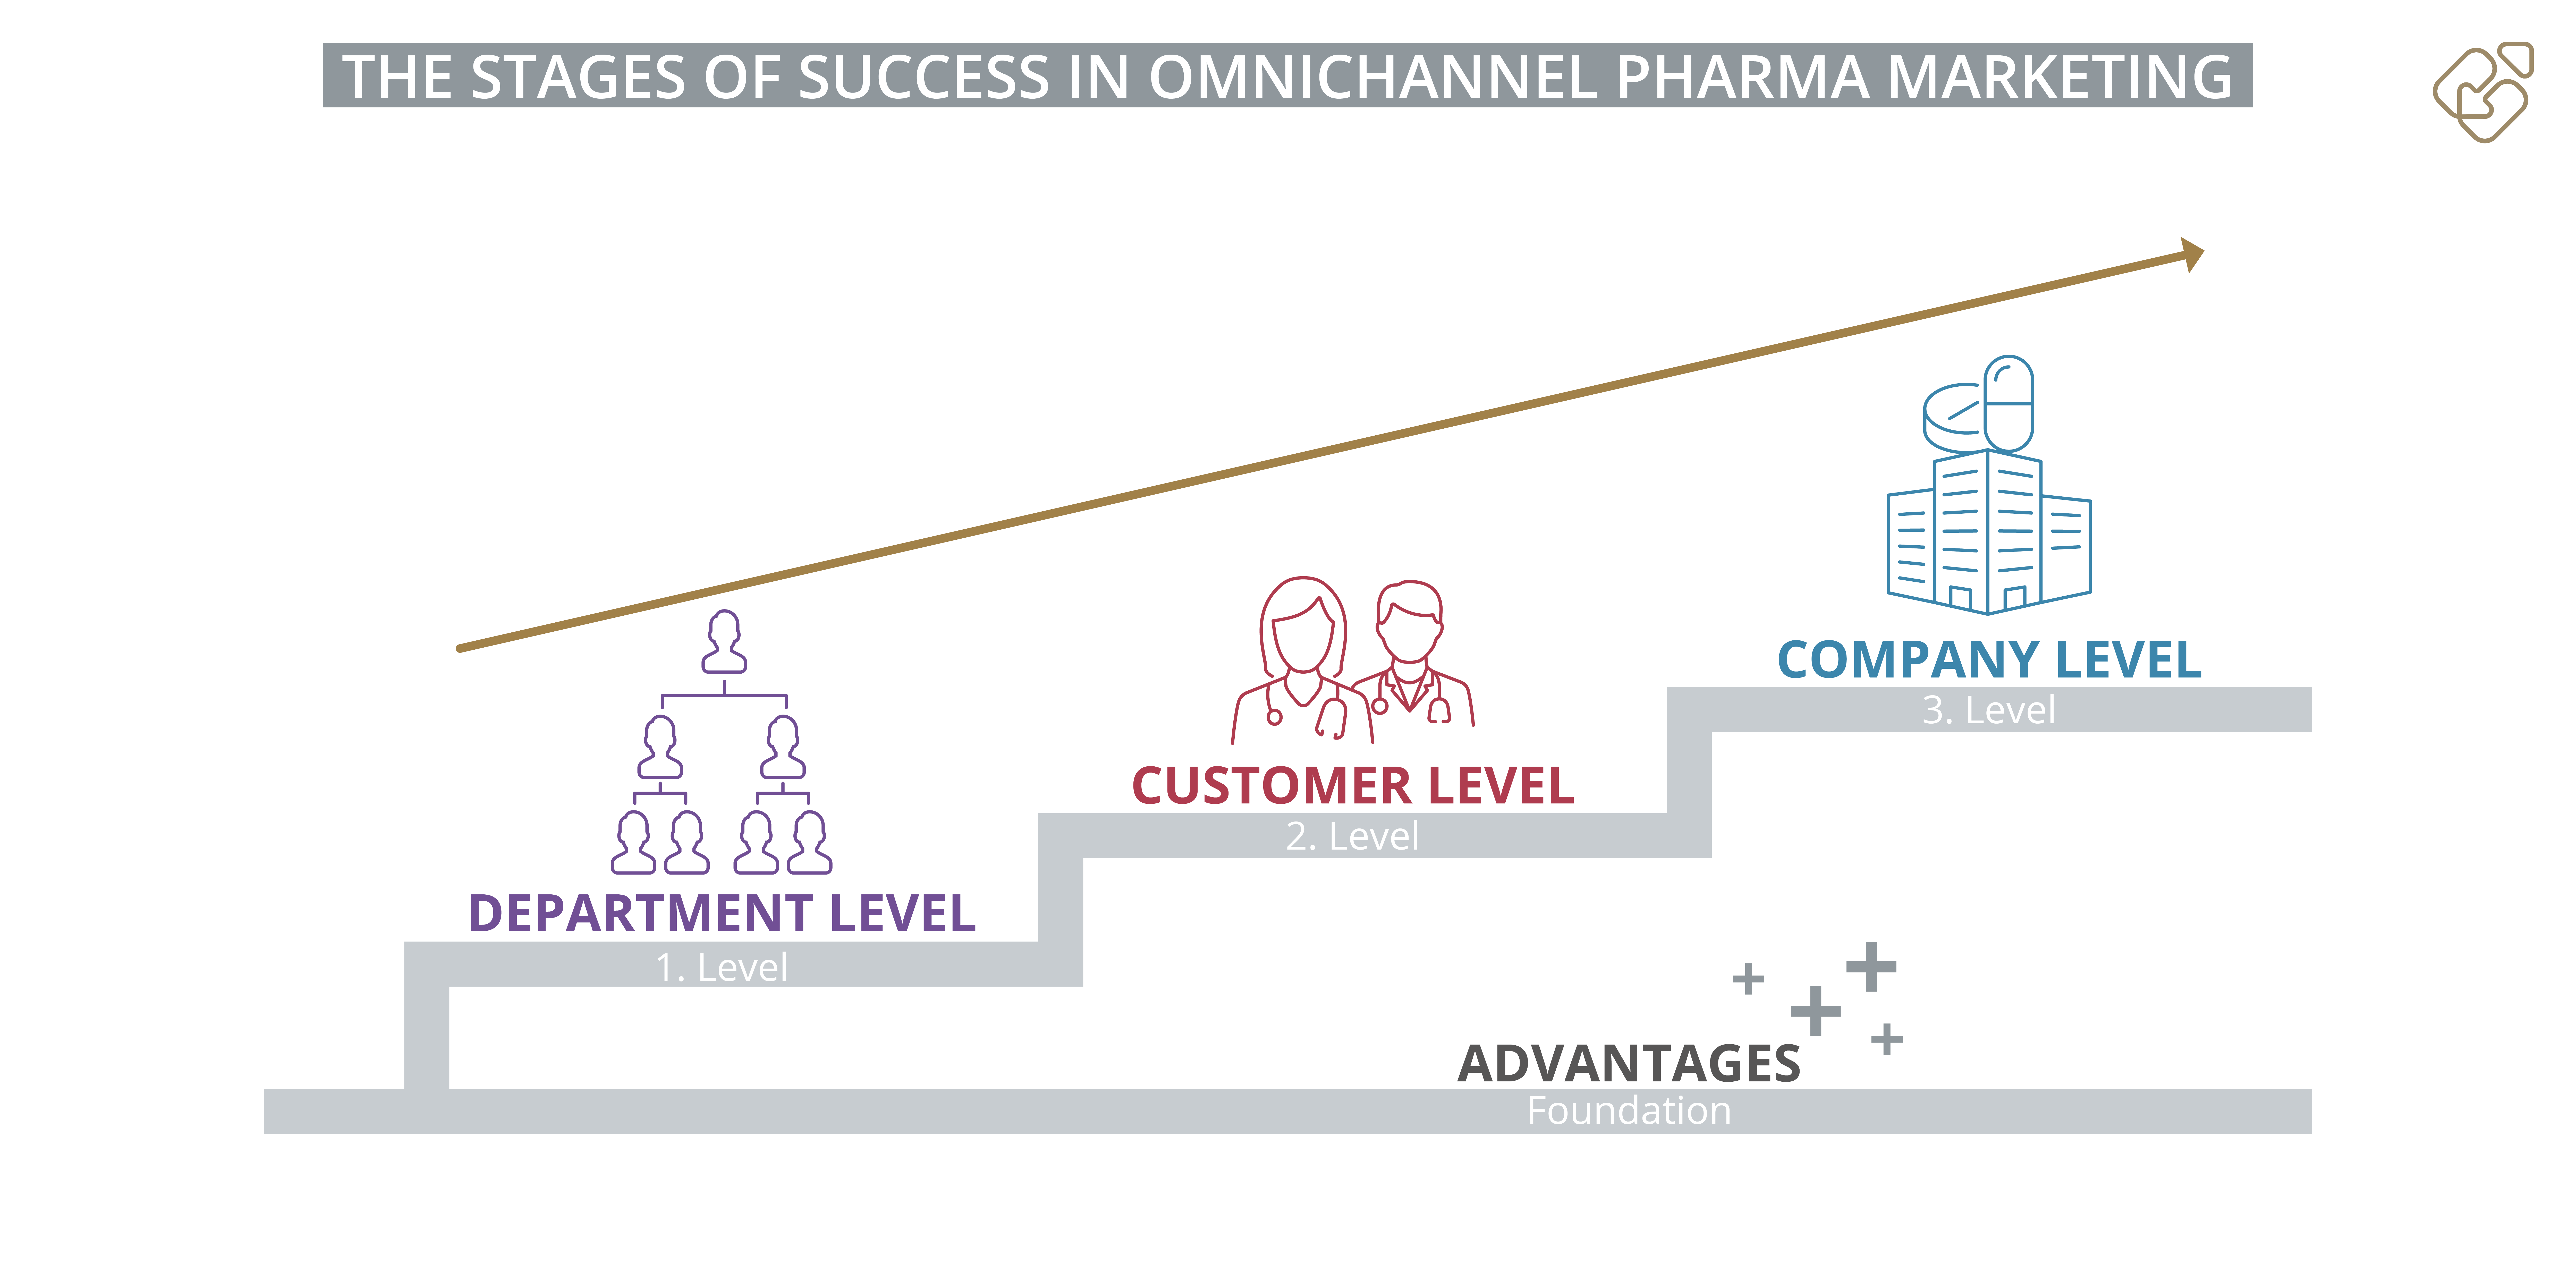 Die Stufen des Erfolgs im Omnichannel Pharma Marketing